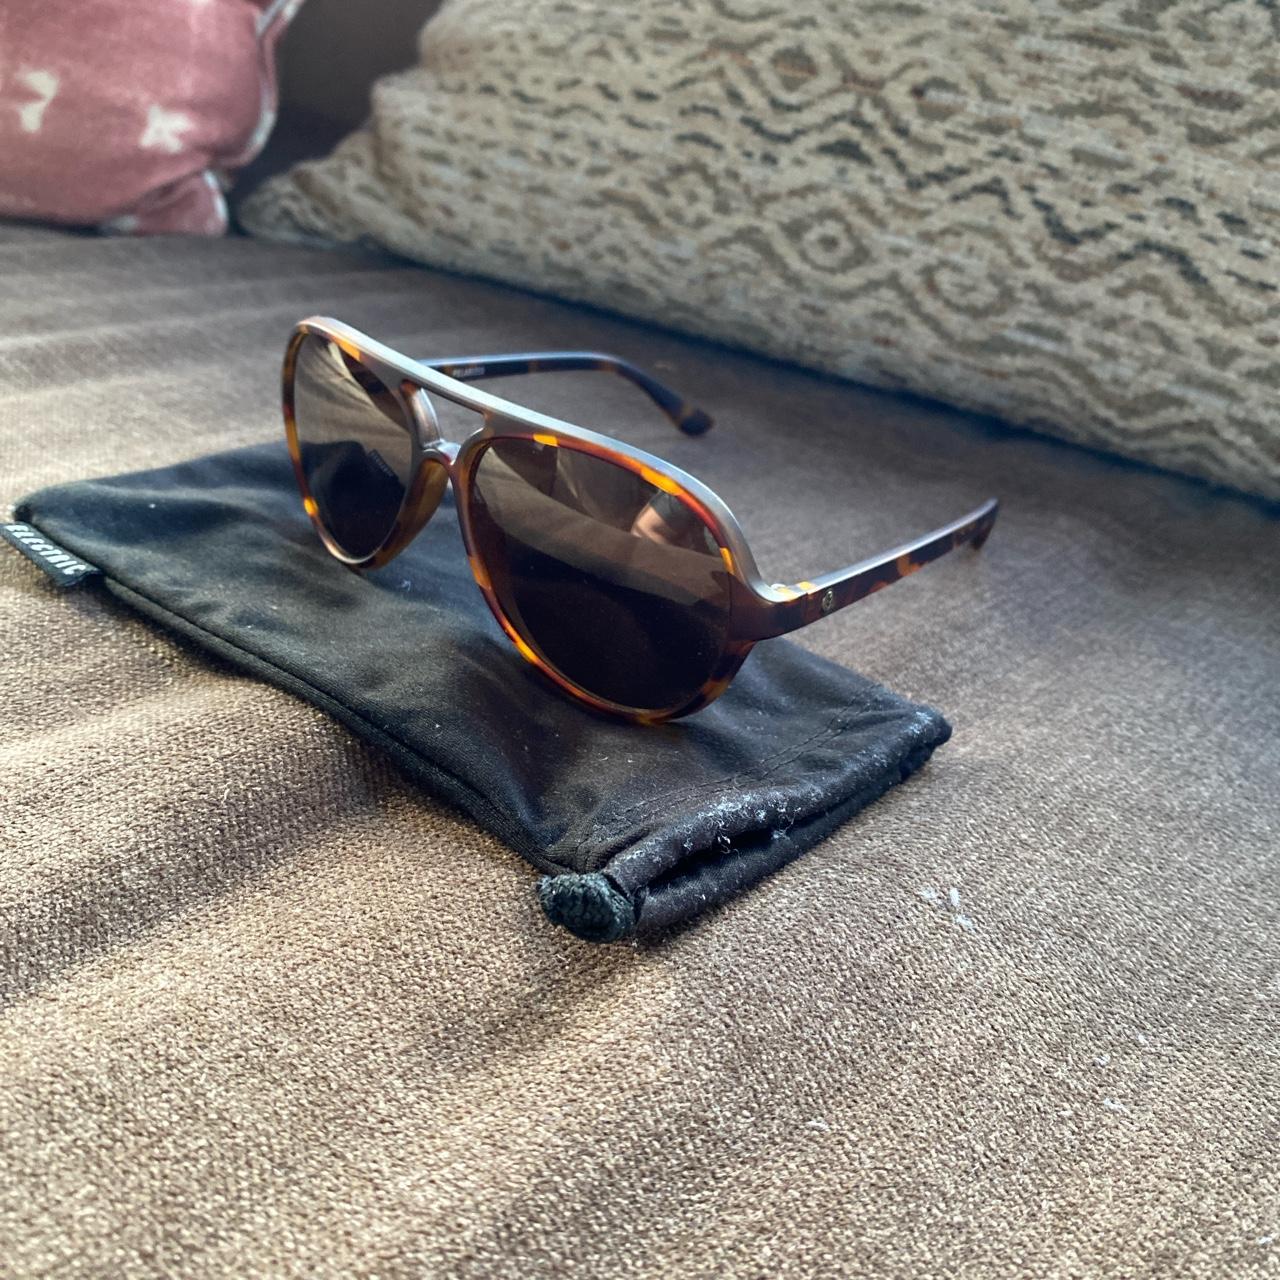 J.CREW Sunglasses & Sunglasses Accessories for Men for sale | eBay